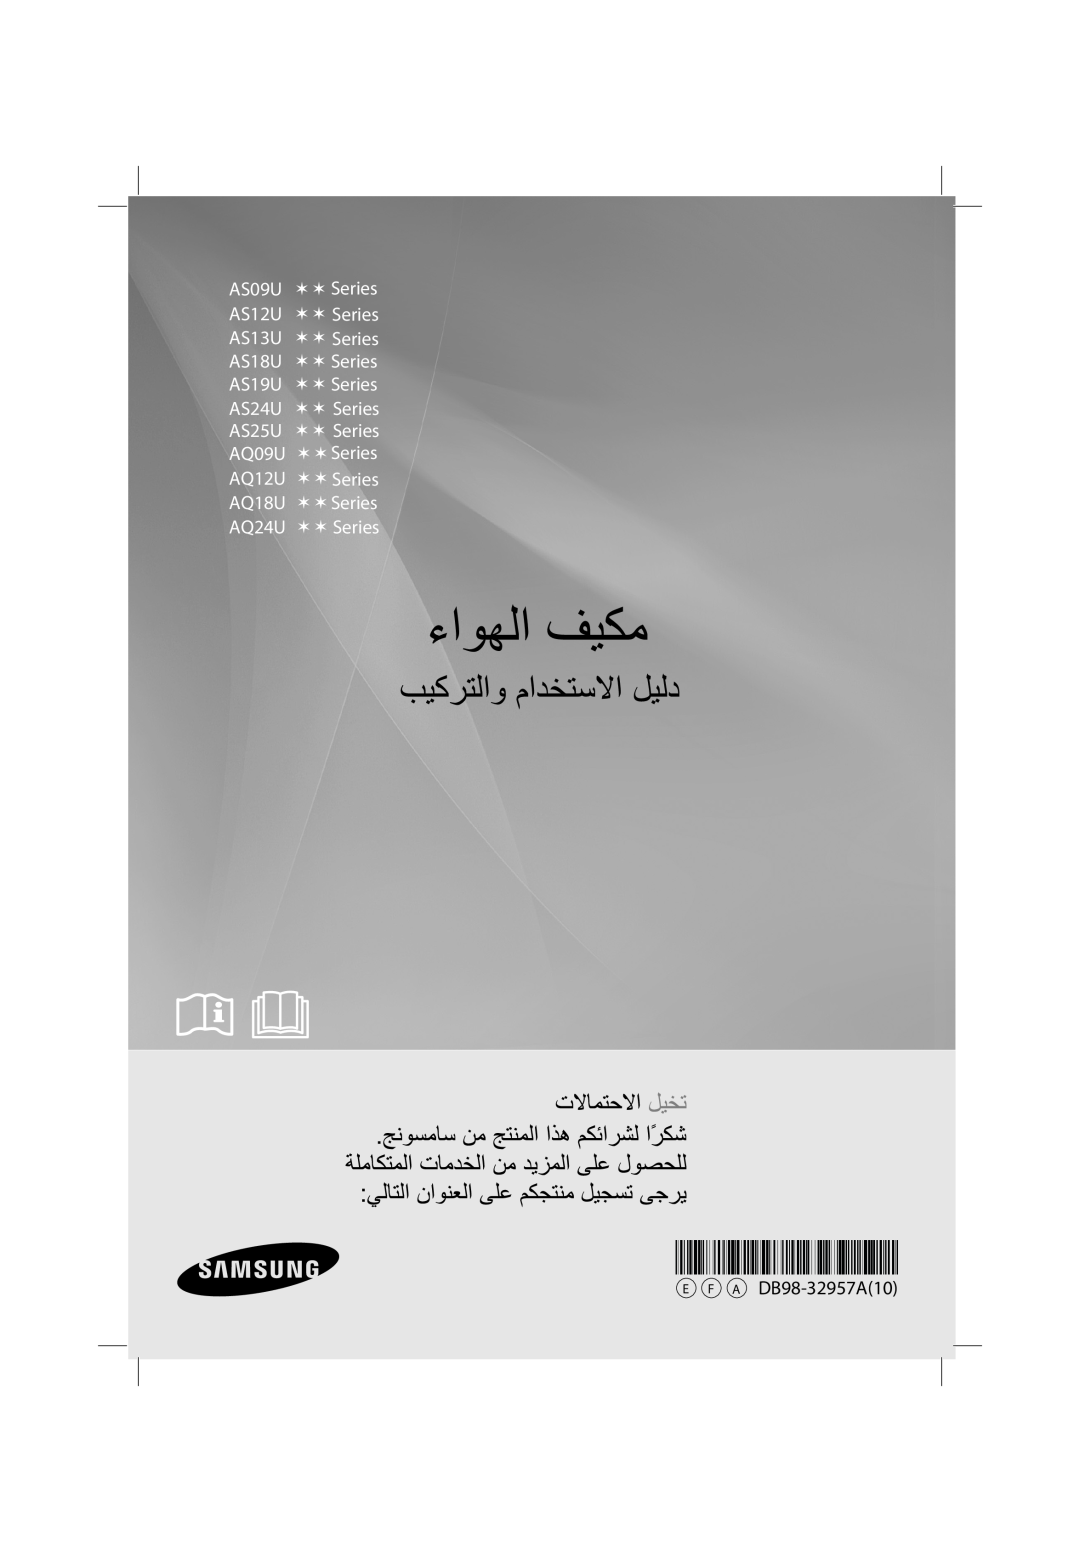 Samsung AQ24UUQXSG, AQ12UUPXSG manual E F A DB98-32957A10, AS09U  Series AS12U  Series AS13U  Series AS18U  Series 